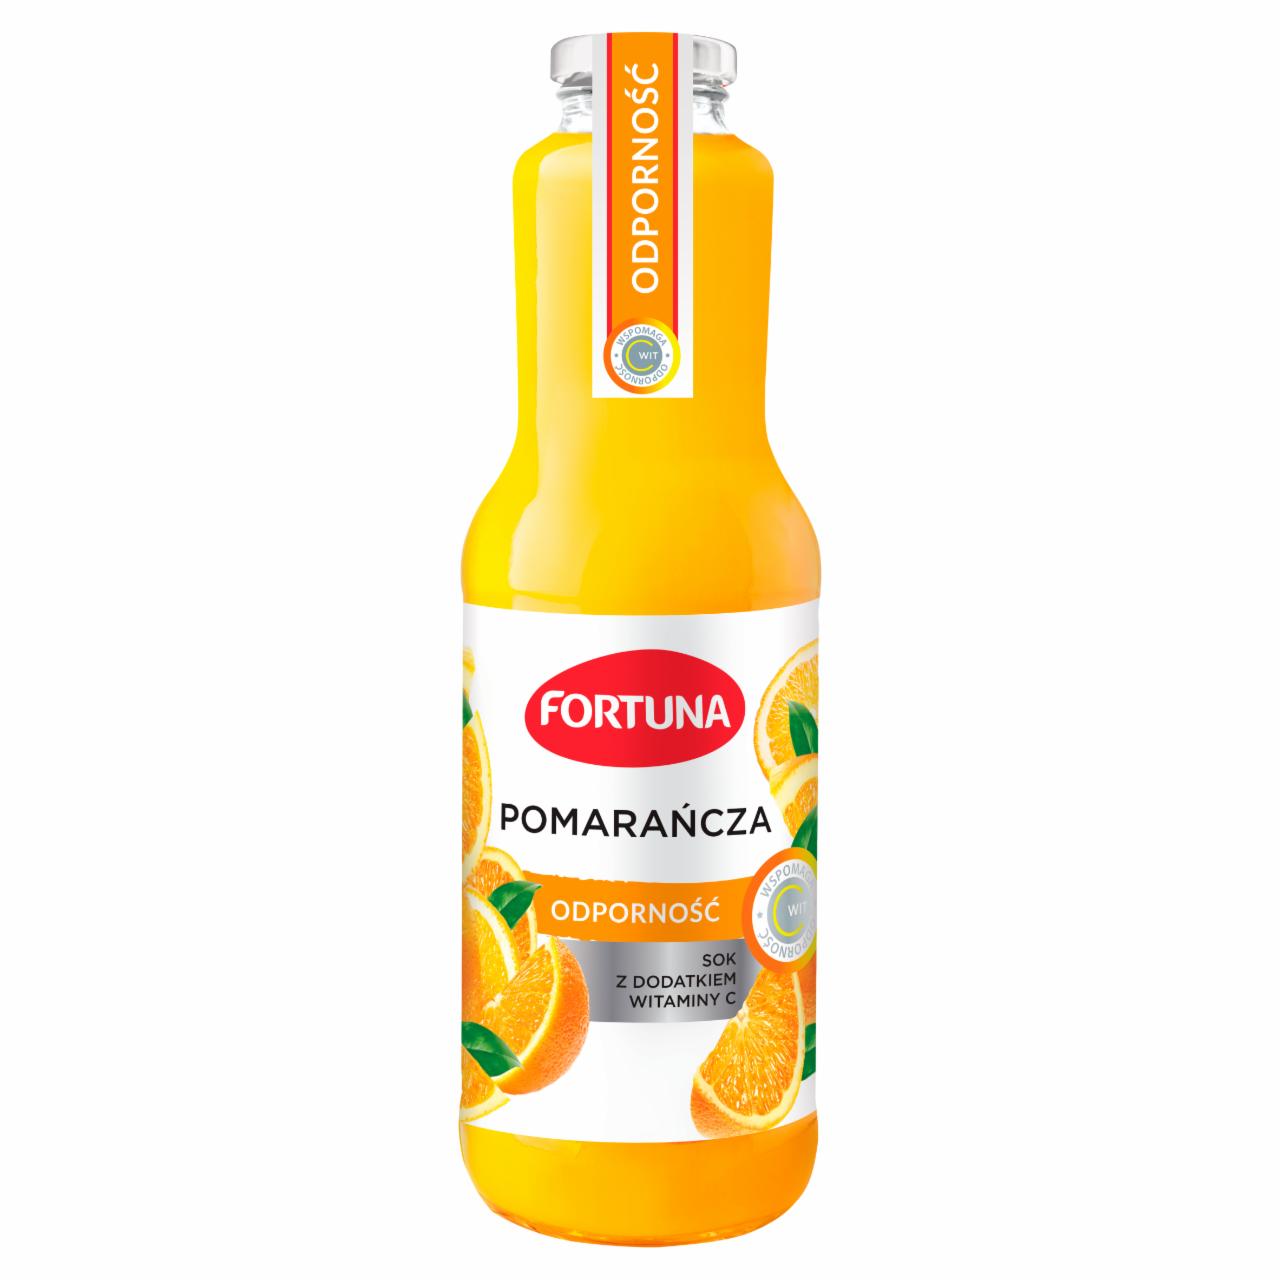 Zdjęcia - Fortuna Sok z dodatkiem witaminy C odporność pomarańcza 1 l